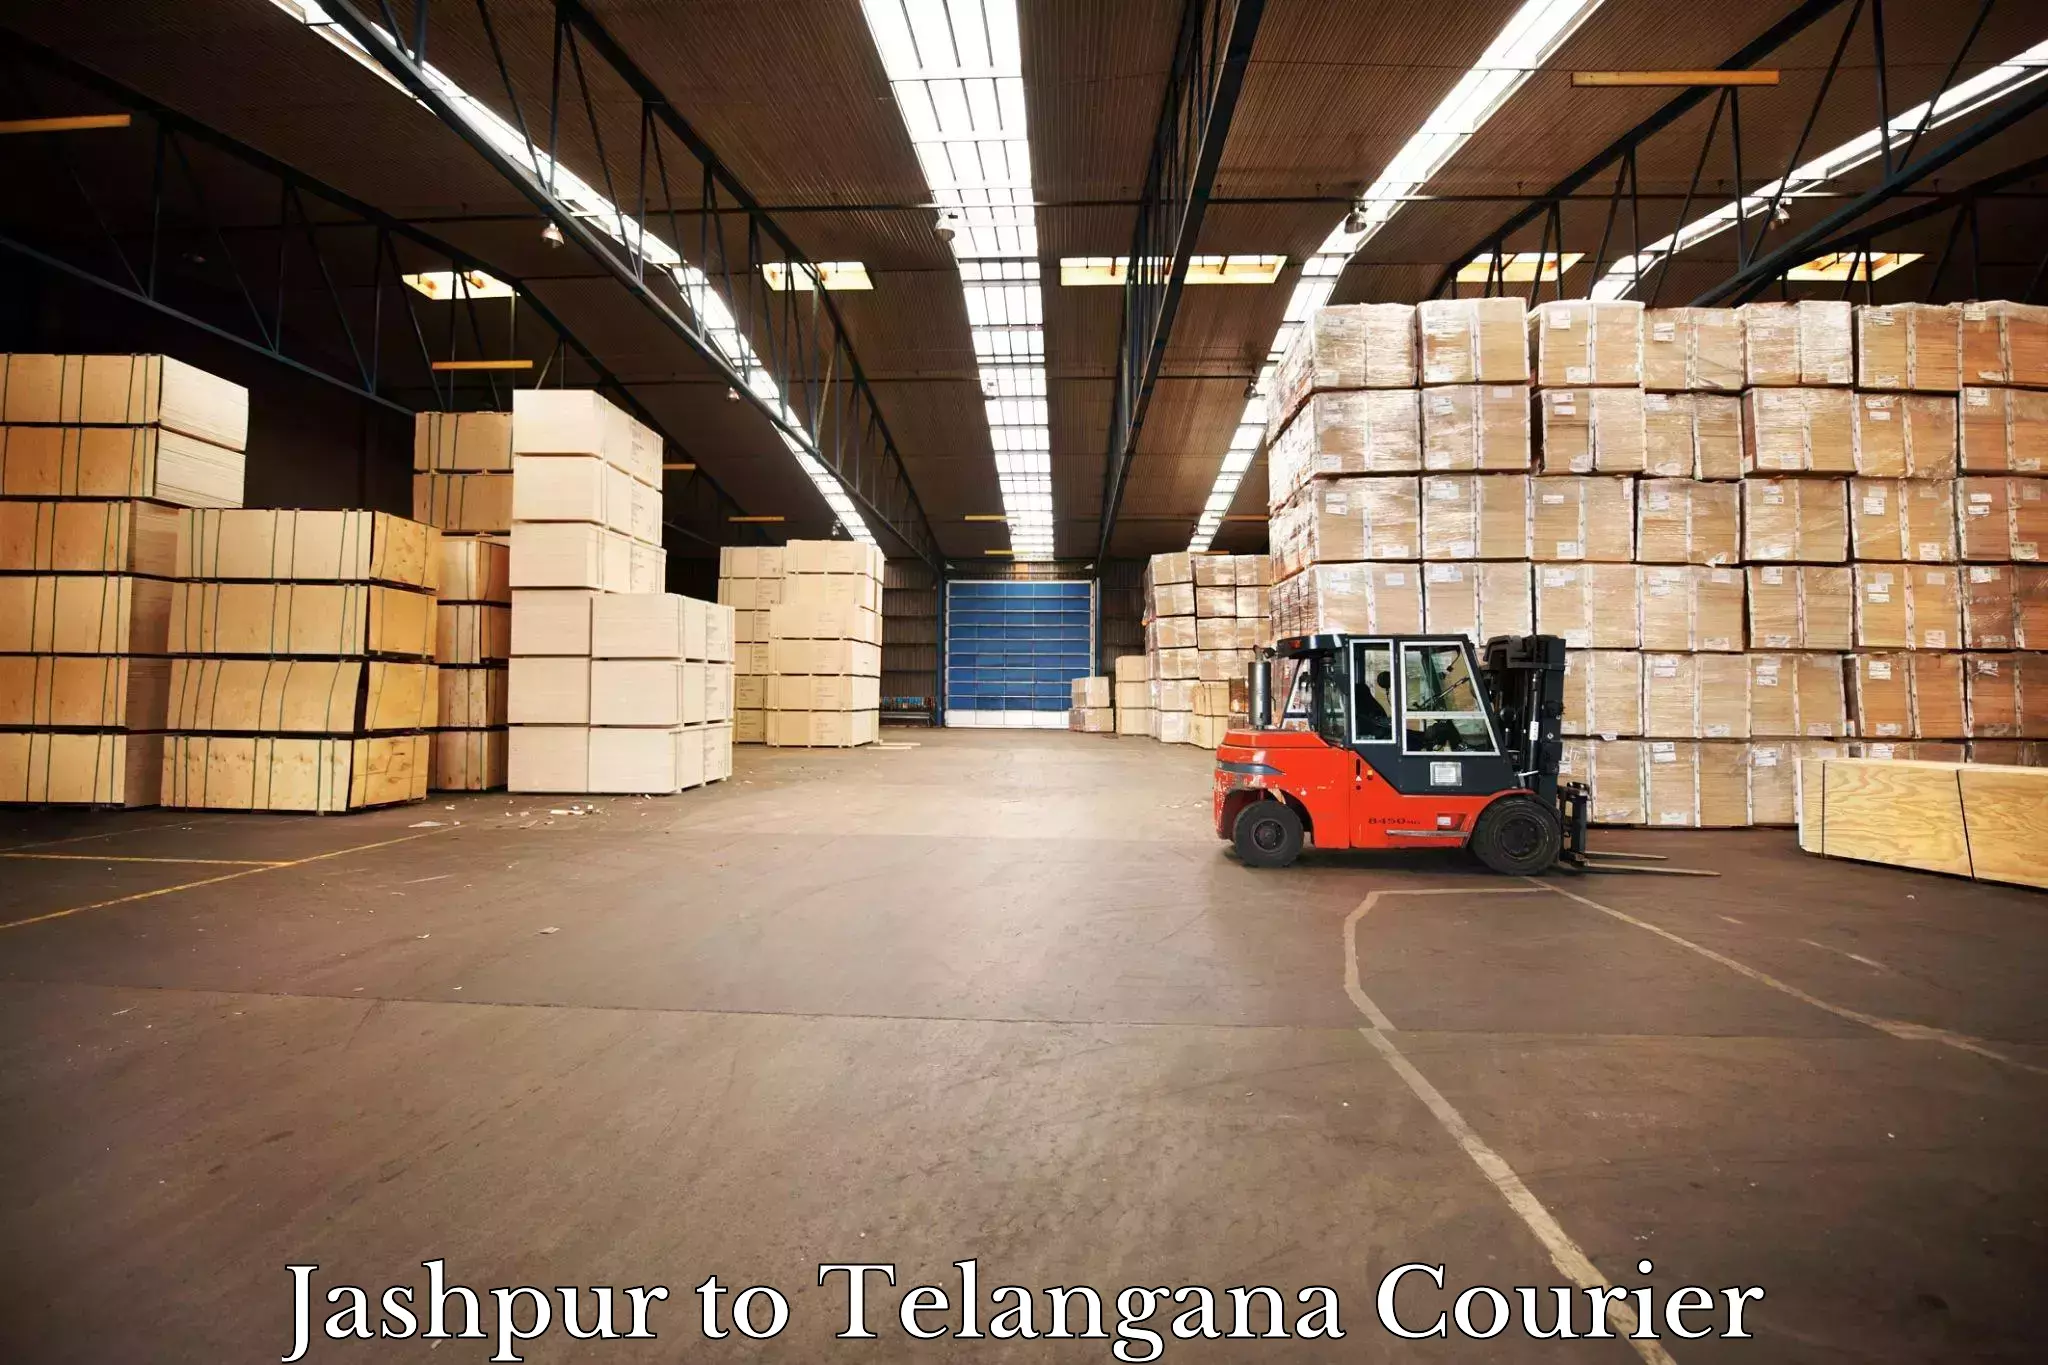 Courier service partnerships Jashpur to Rayaparthi